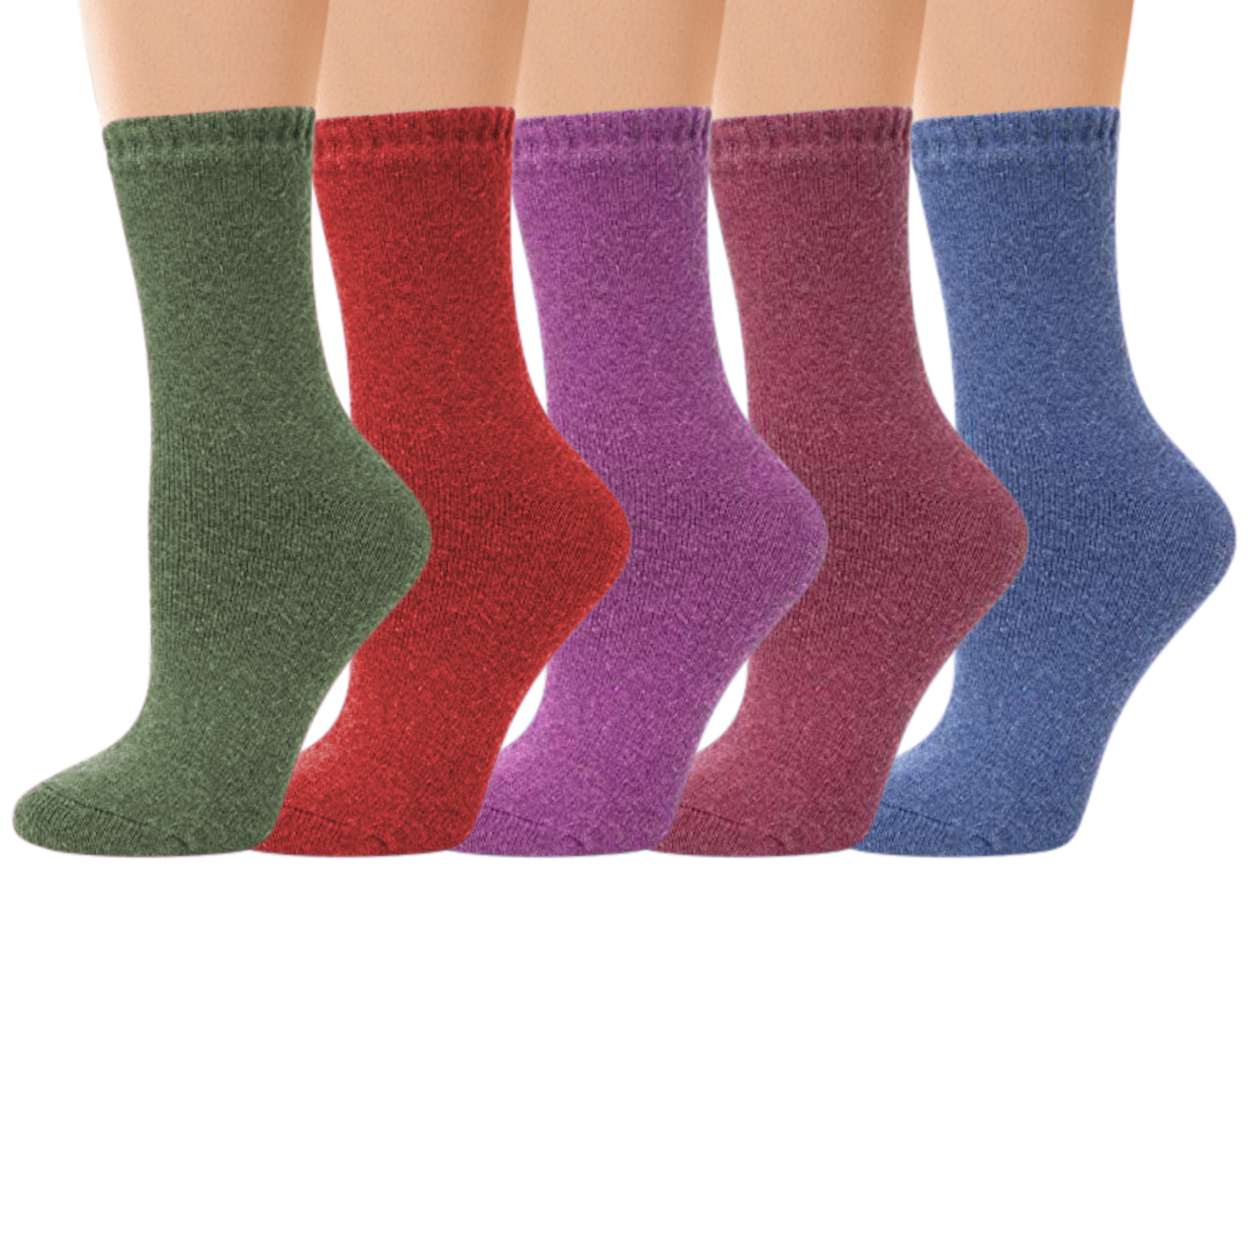 5-Pairs: Women's Warm Thick Soft Merino Lamb Wool Winter Thermal Socks